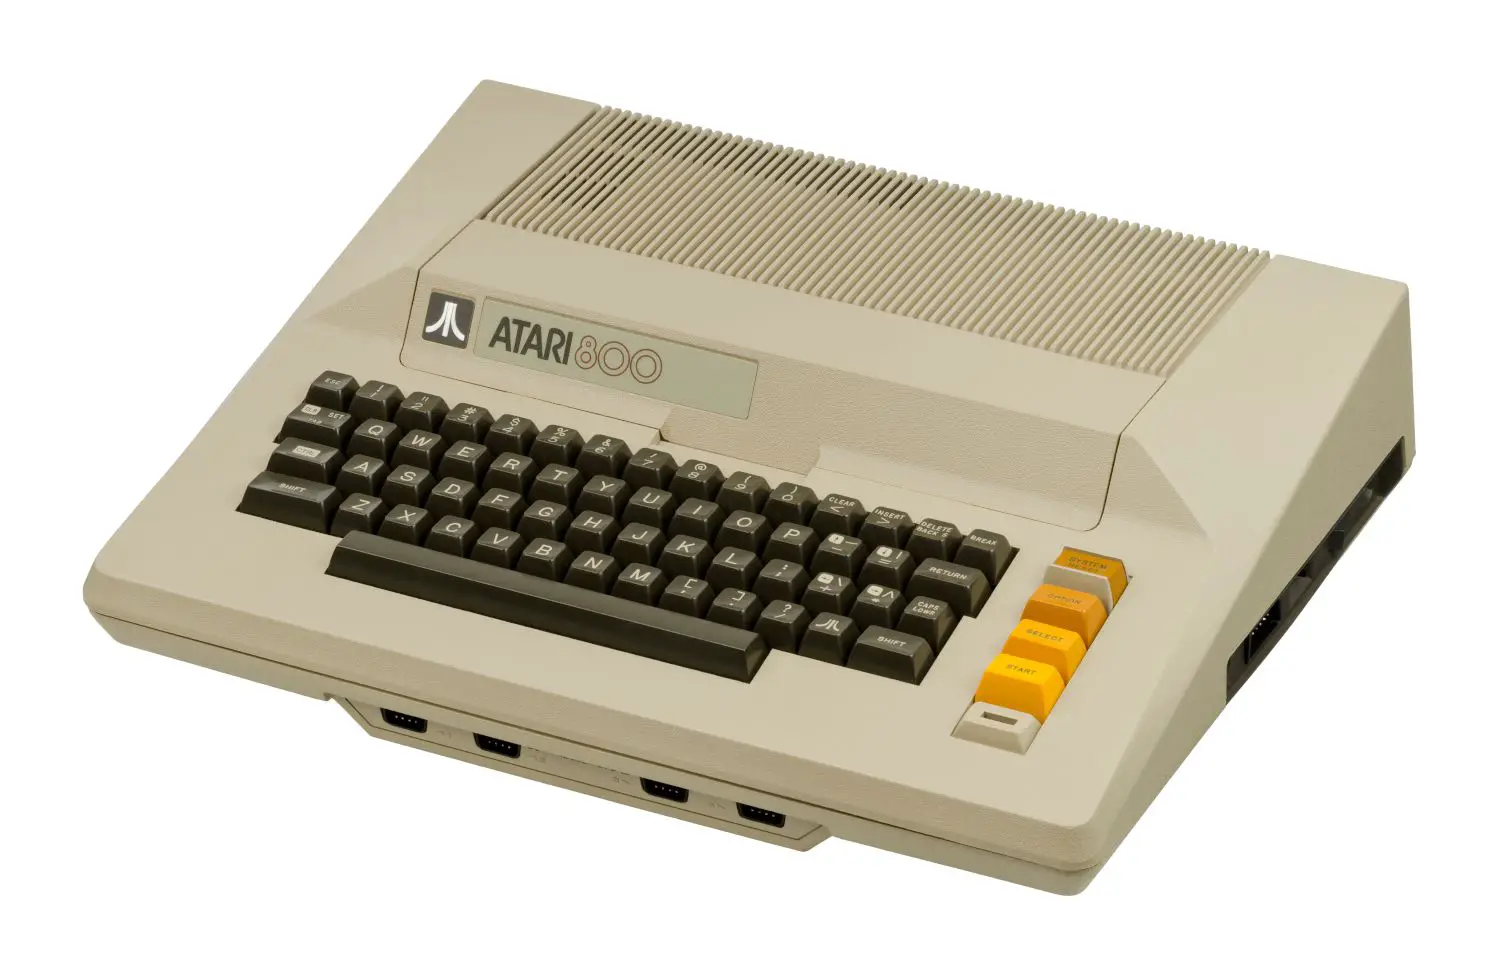 Computador doméstico Atari 800